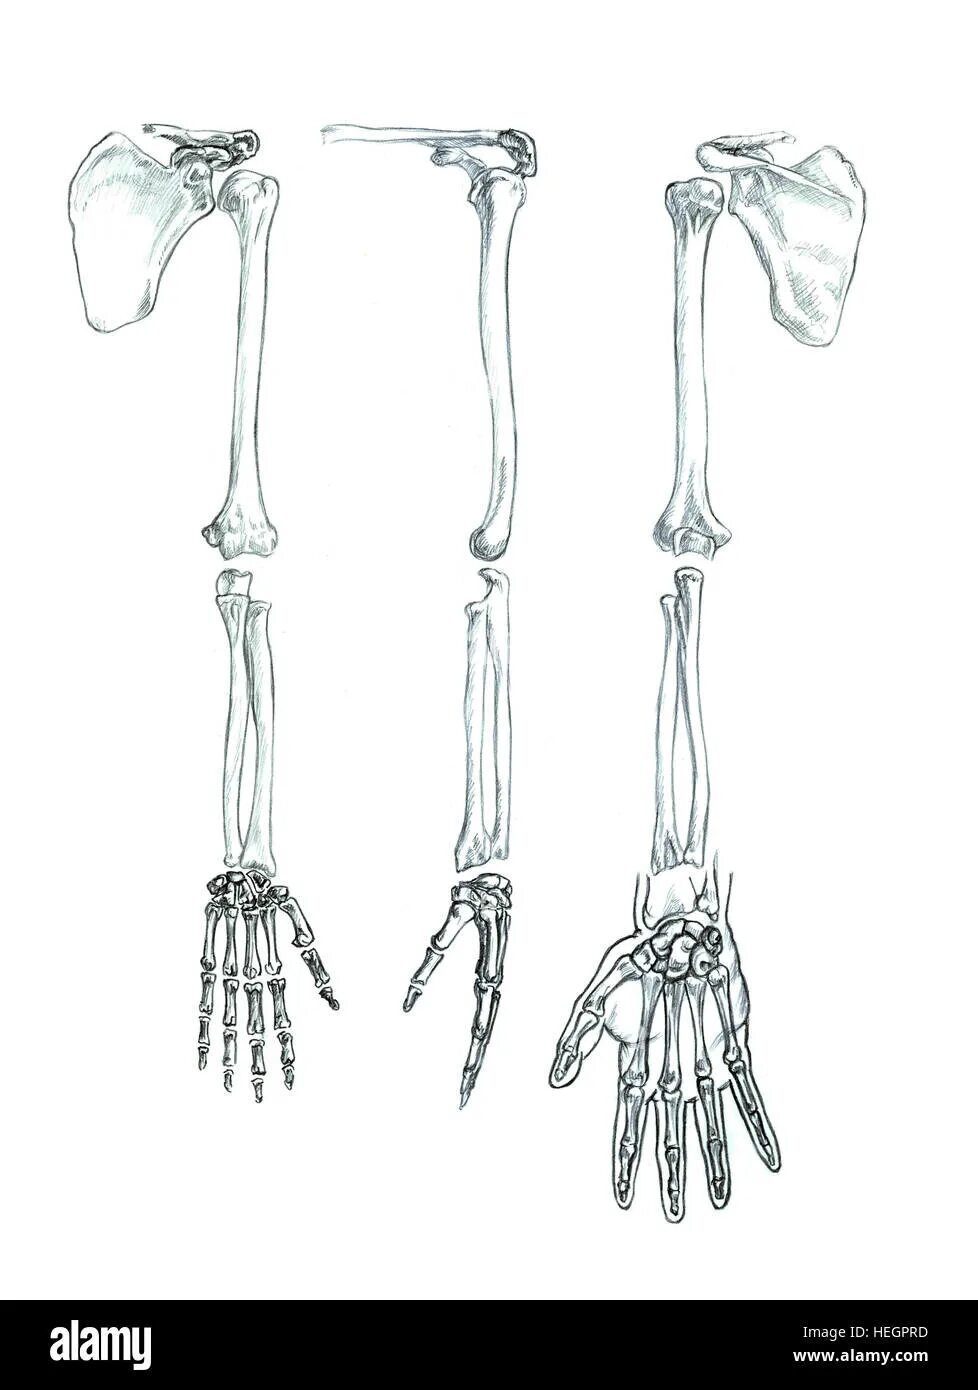 Скелет верхней конечности рисунки. Скелет руки. Скелет руки анатомия. Скелет верхней конечности. Скелет человеческой руки.